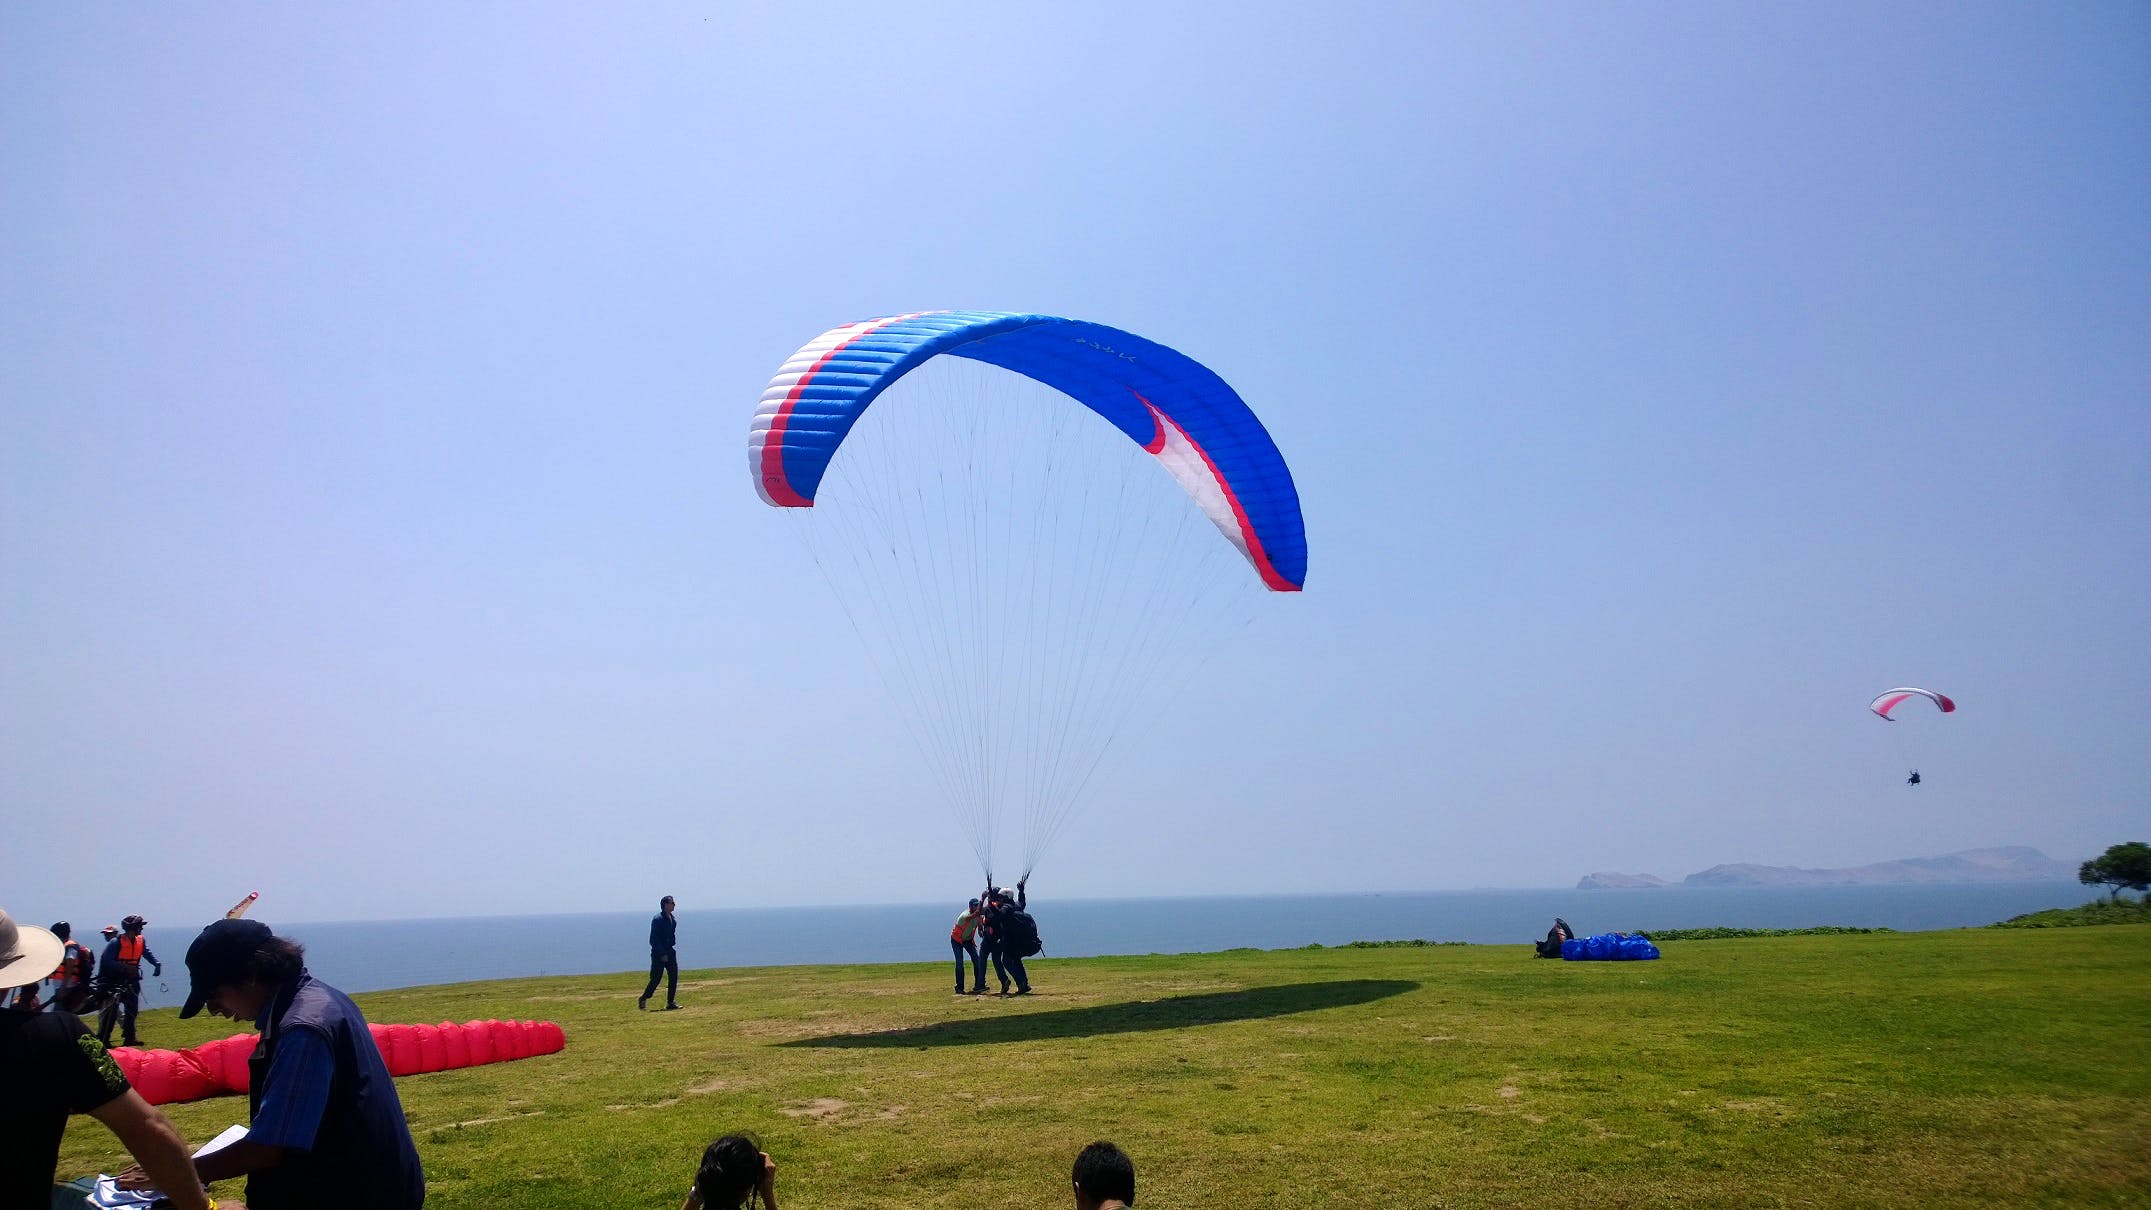 Parachute,Paragliding,Parachuting,Air sports,Sky,Horizon,Cloud,Grassland,Windsports,Fun